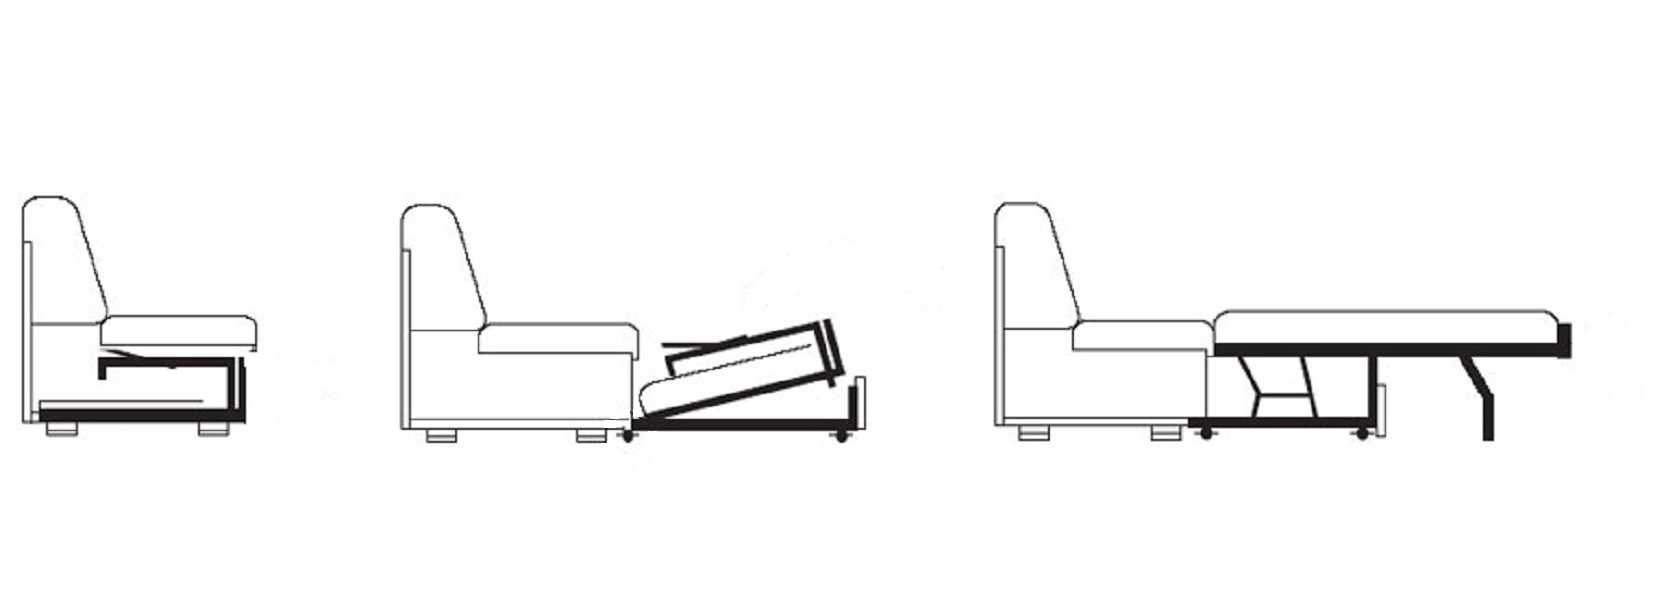 Как собрать диван-аккордеон, фото как разобрать механизм — подробная схема сборки и раскладки